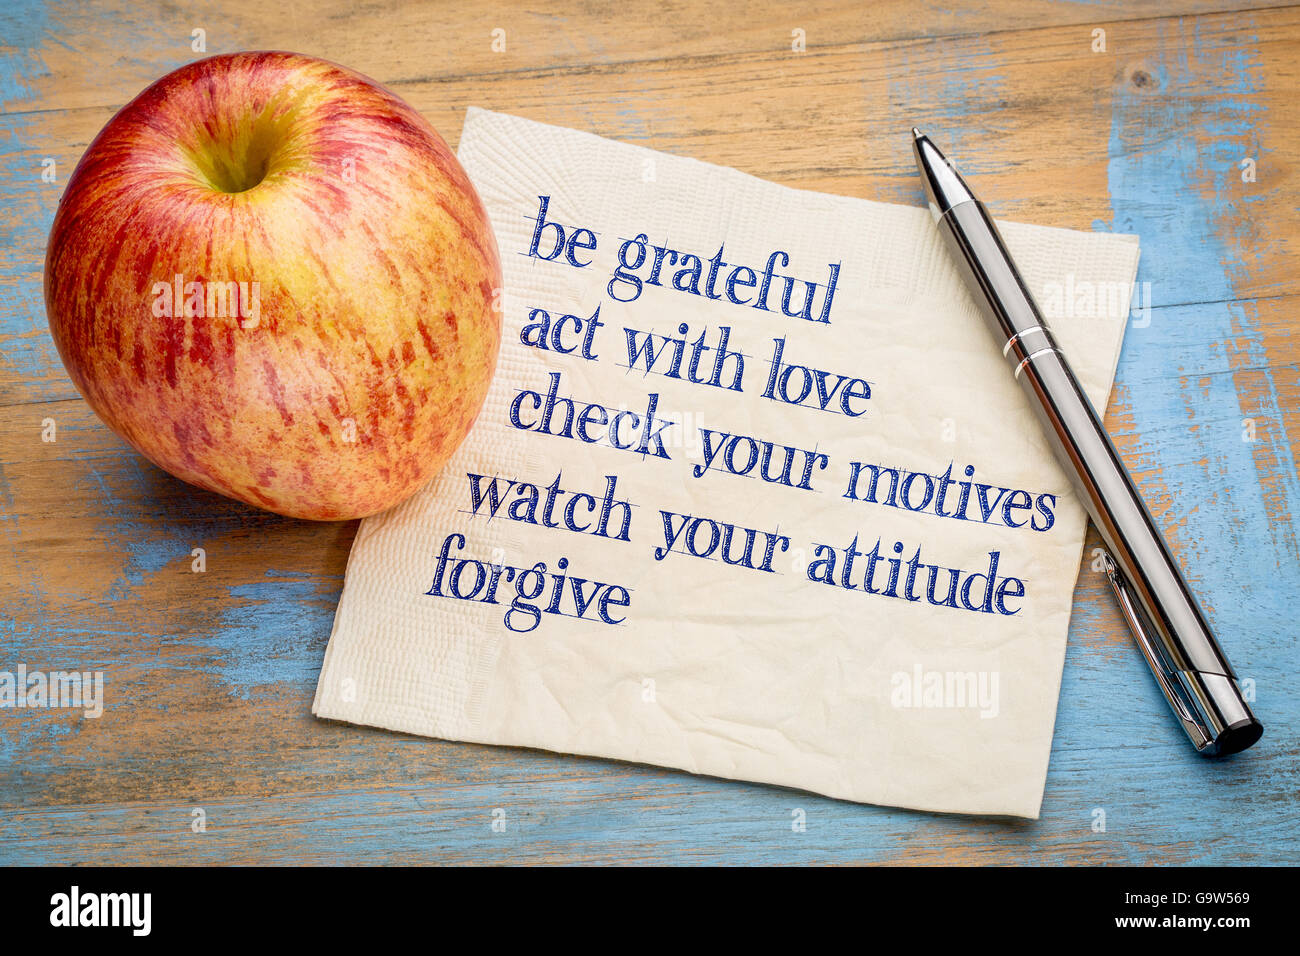 Ser agradecidos y otras frases inspiradoras de escritura en una servilleta con una manzana fresca Foto de stock